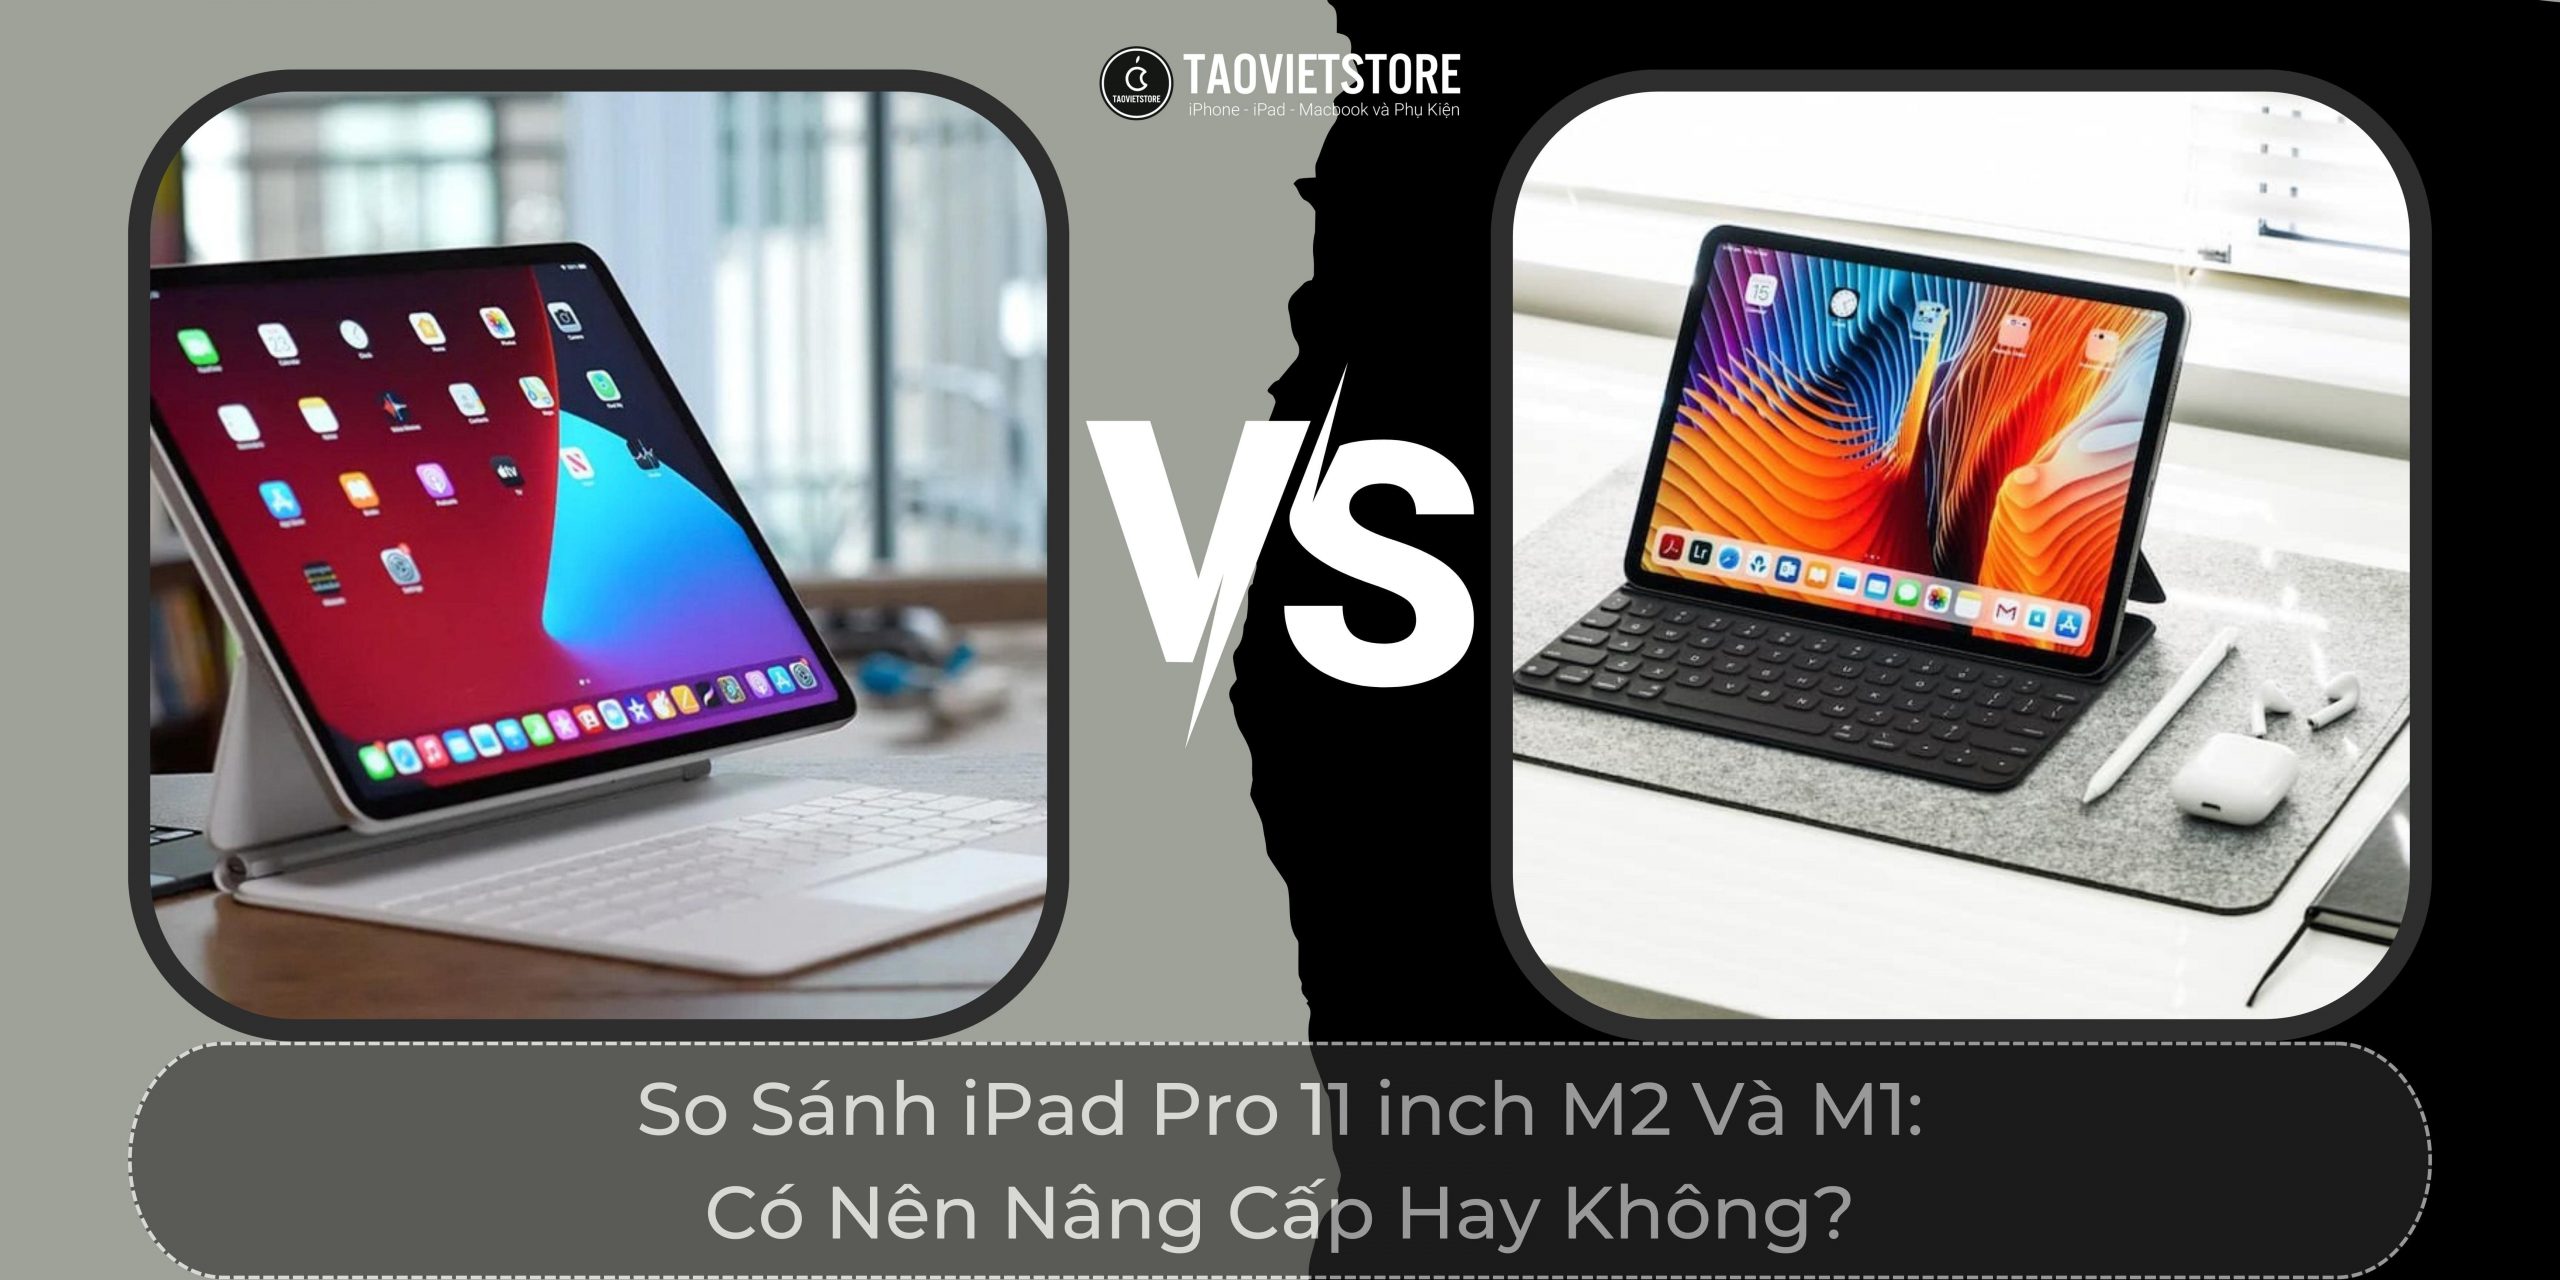 So Sánh iPad Pro 11 inch M2 Và M1: Có Nên Nâng Cấp Hay Không?